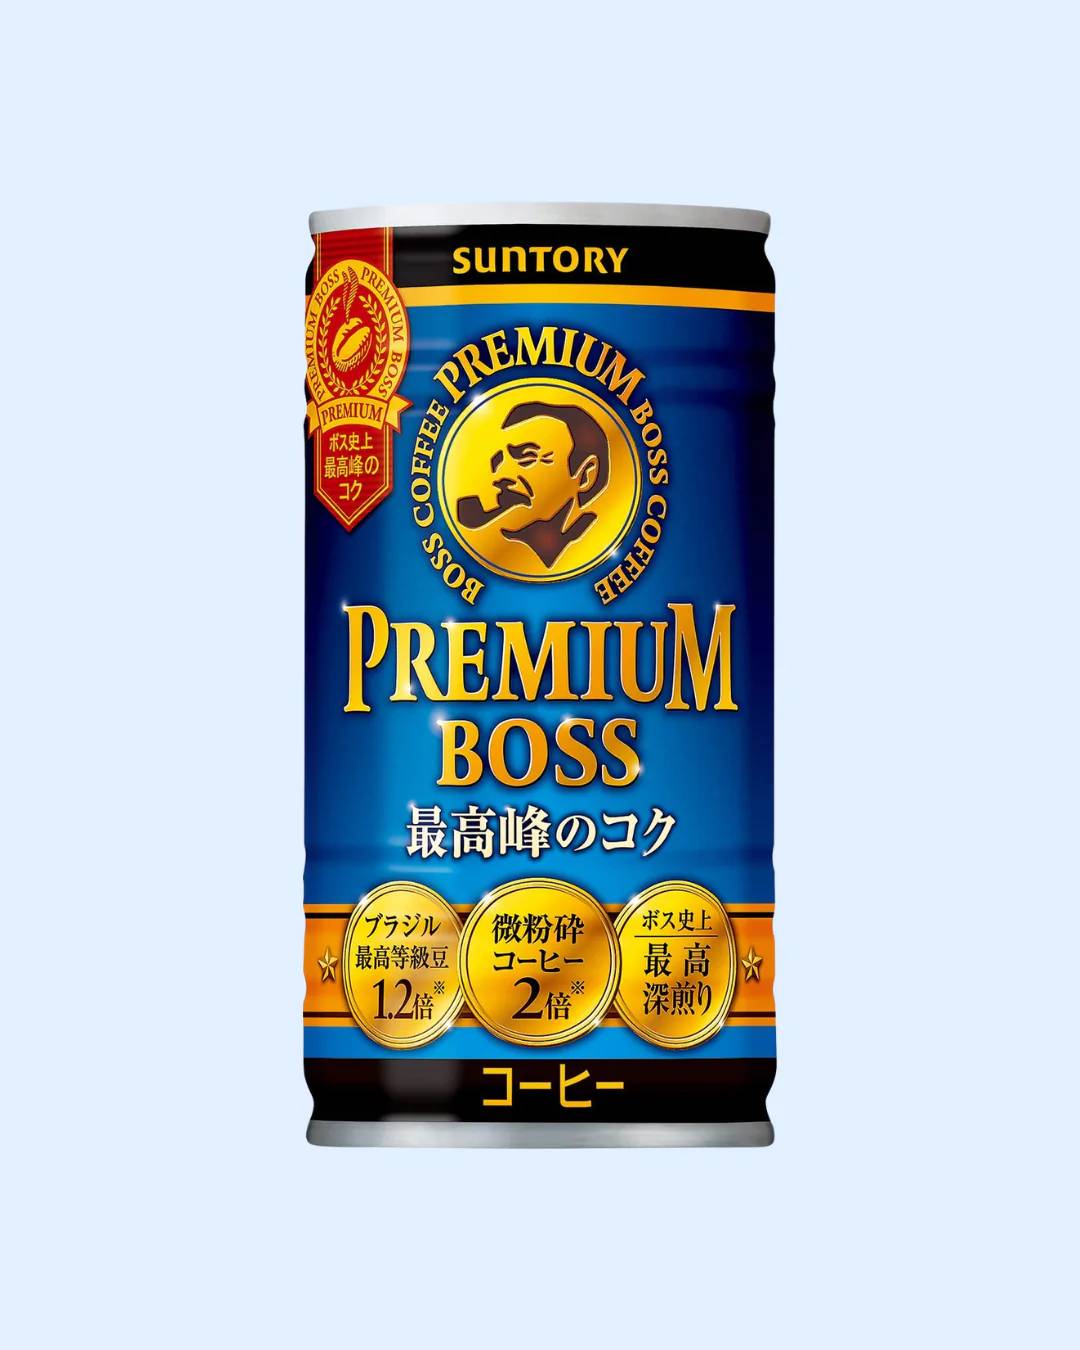 Suntory BOSS Prime Café/ Premium Coffee (185 G)